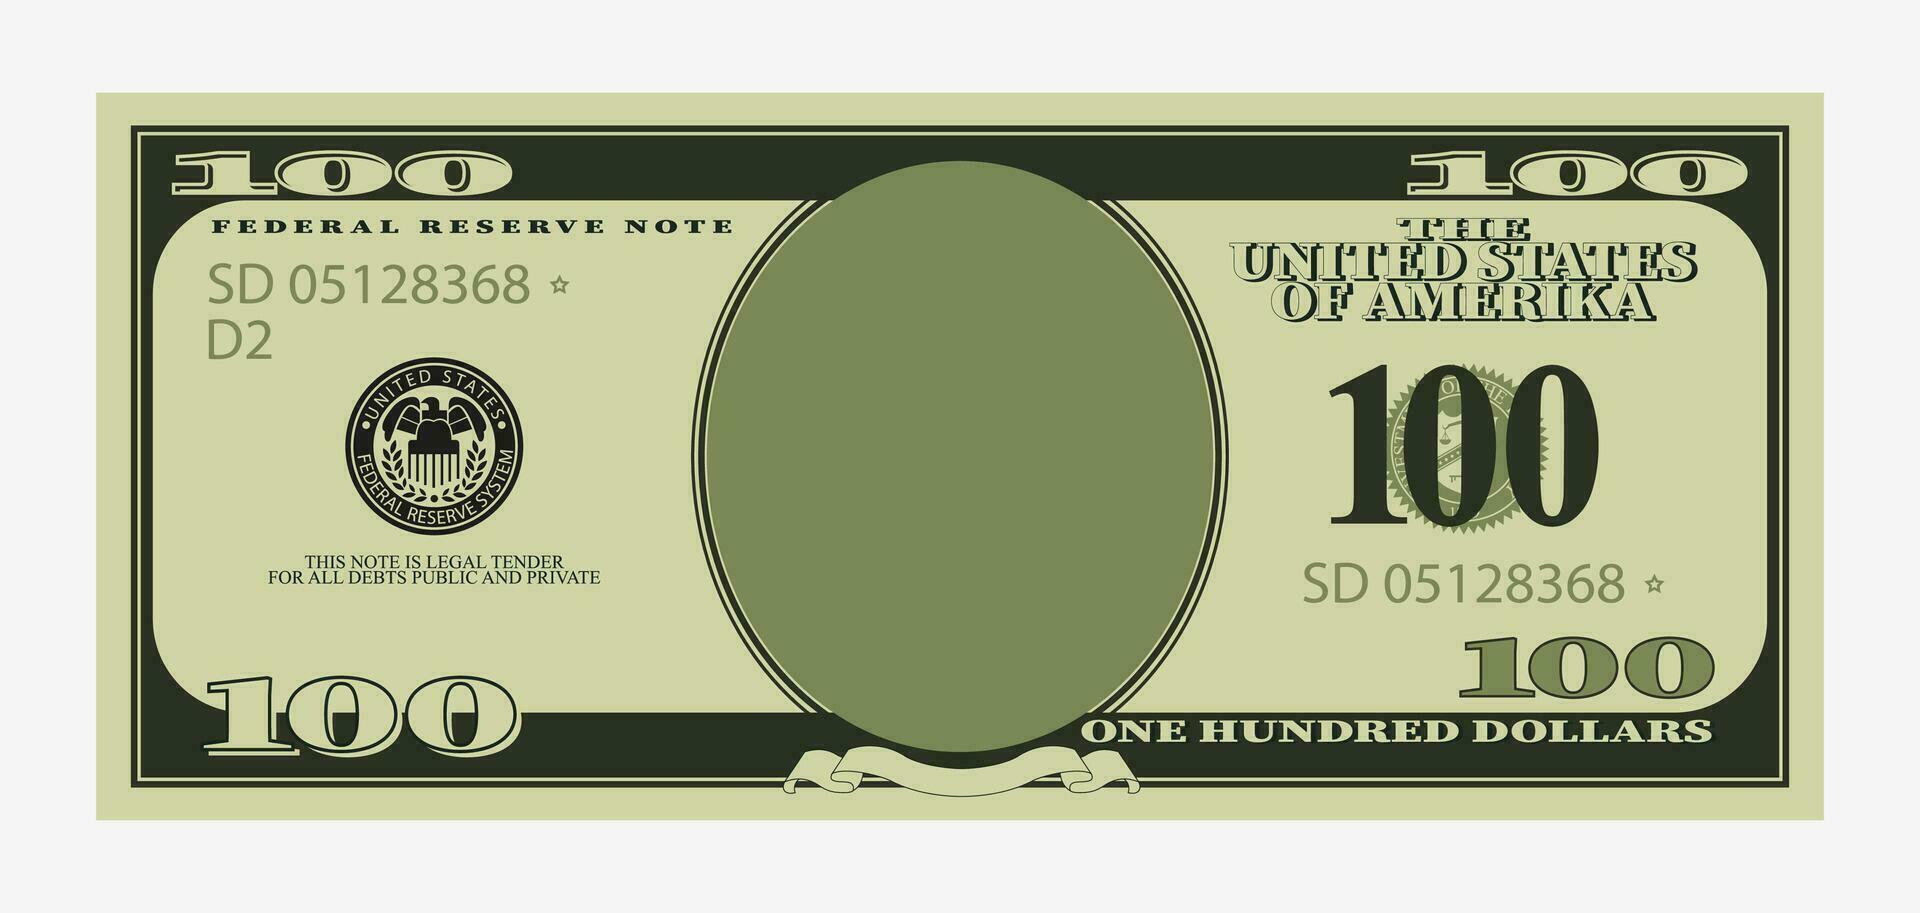 einhundert-dollar-rechnungsvorlage. amerikanische banknote mit leerer hochformatpapiergeld-vektorvorlage für wirtschaftliche investitionen zum einfügen ihrer gesichtszeichnung. vektor